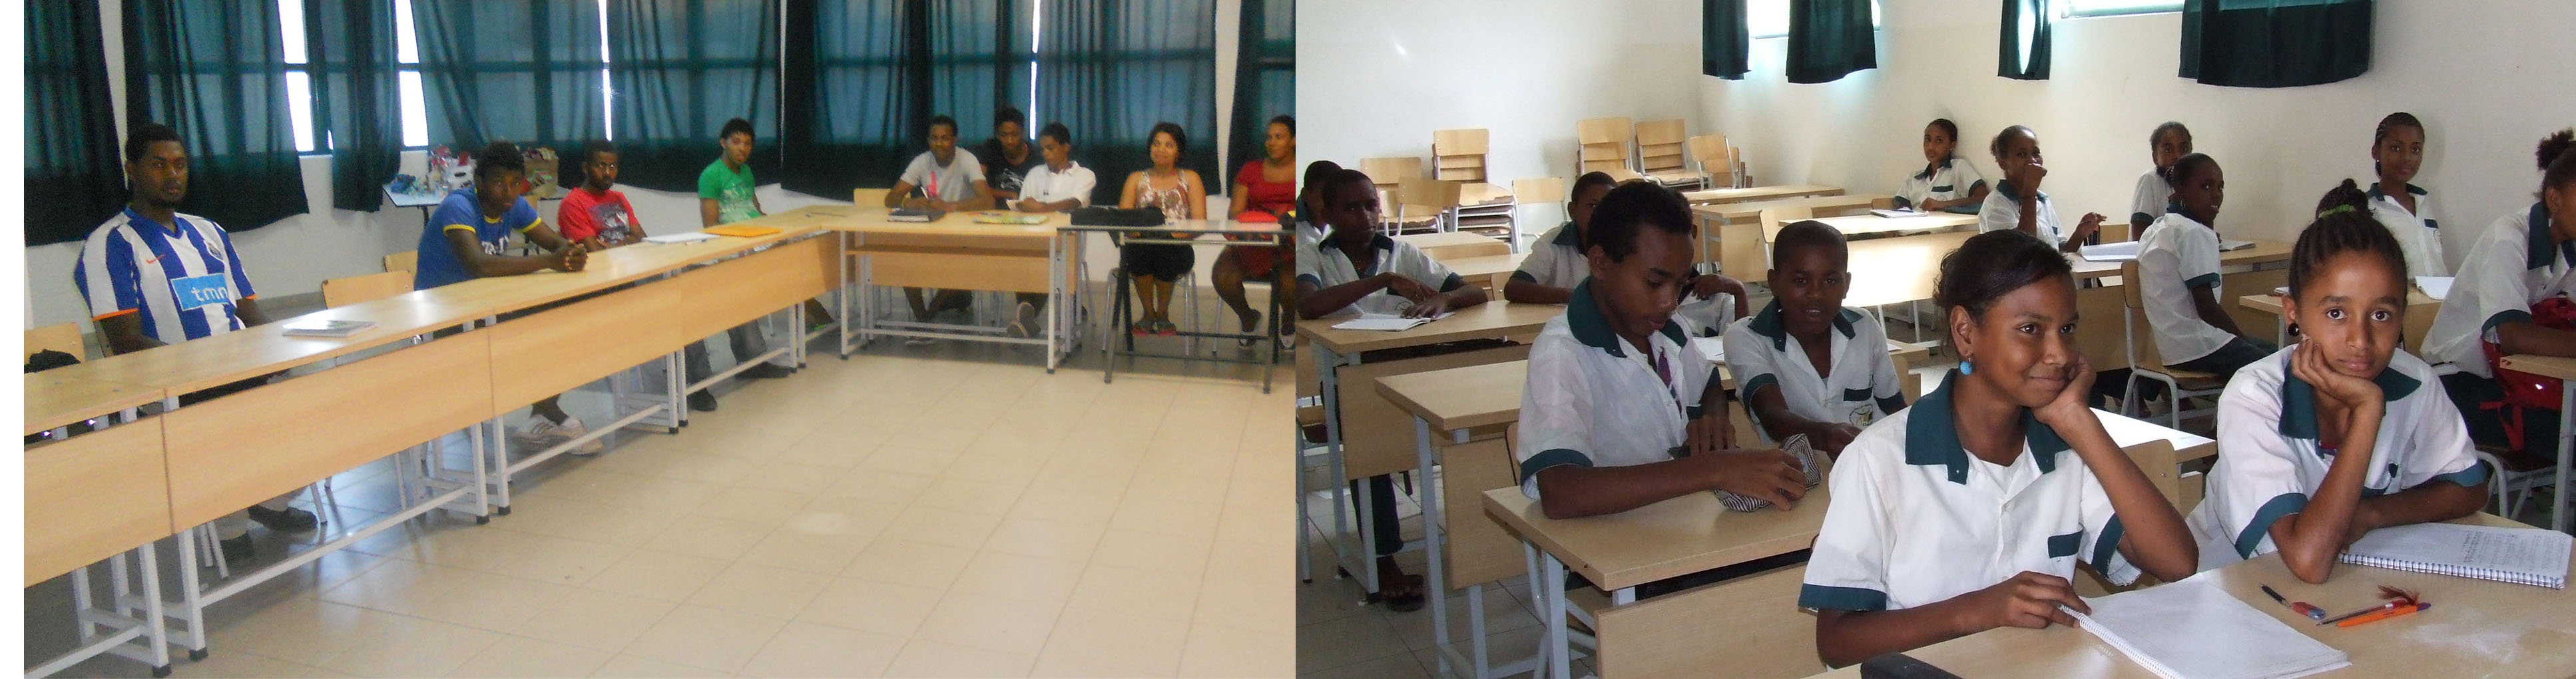 Fotografie delle aule della scuola a Ribeira das Patas